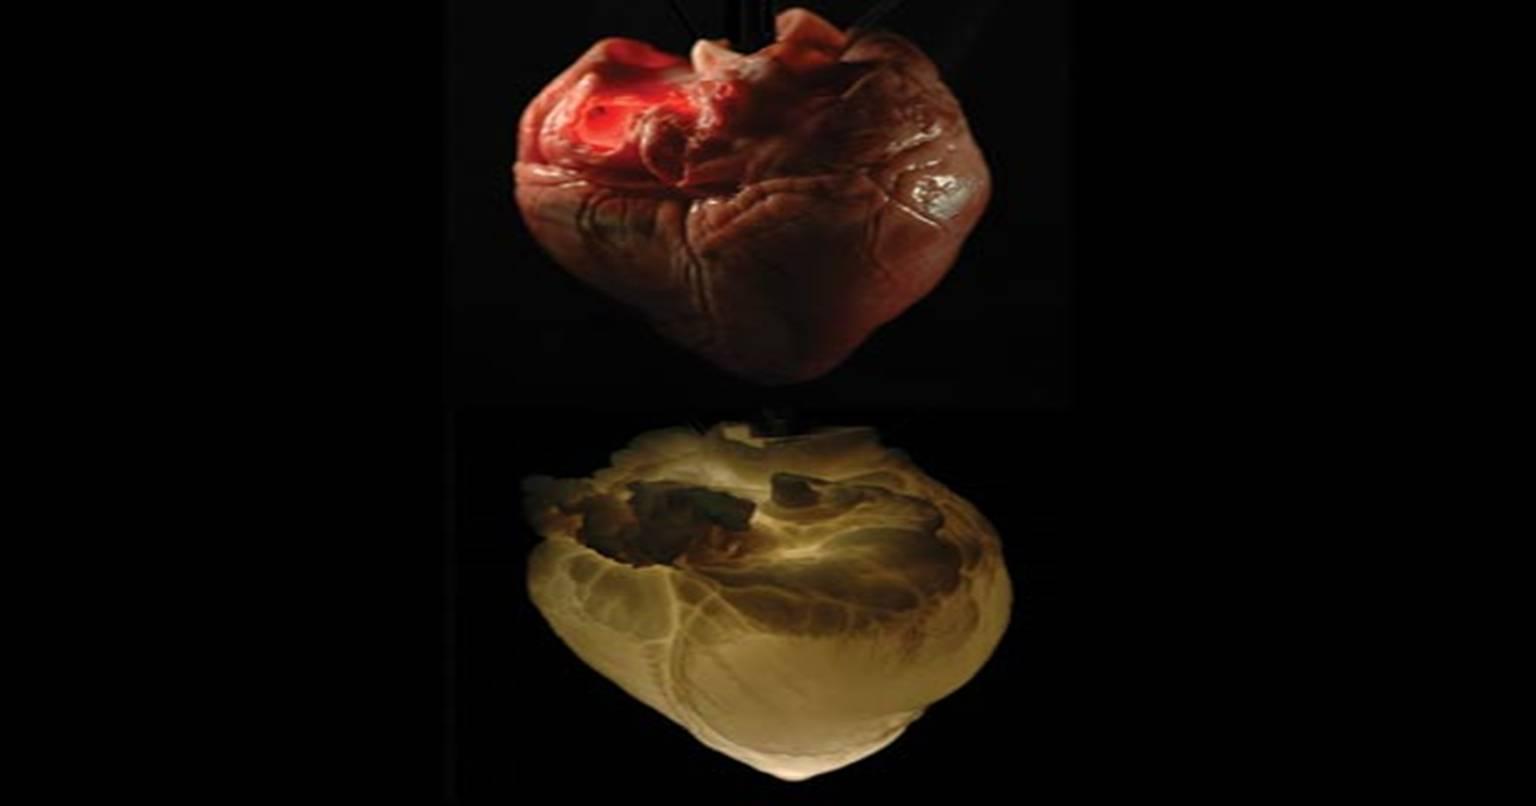 वैज्ञानिकों के दिमाग में उपजा अब तक का सबसे अजीब उपाय, बनाया एक कृत्रिम दिल…जिसका नाम है “भूत दिल”!